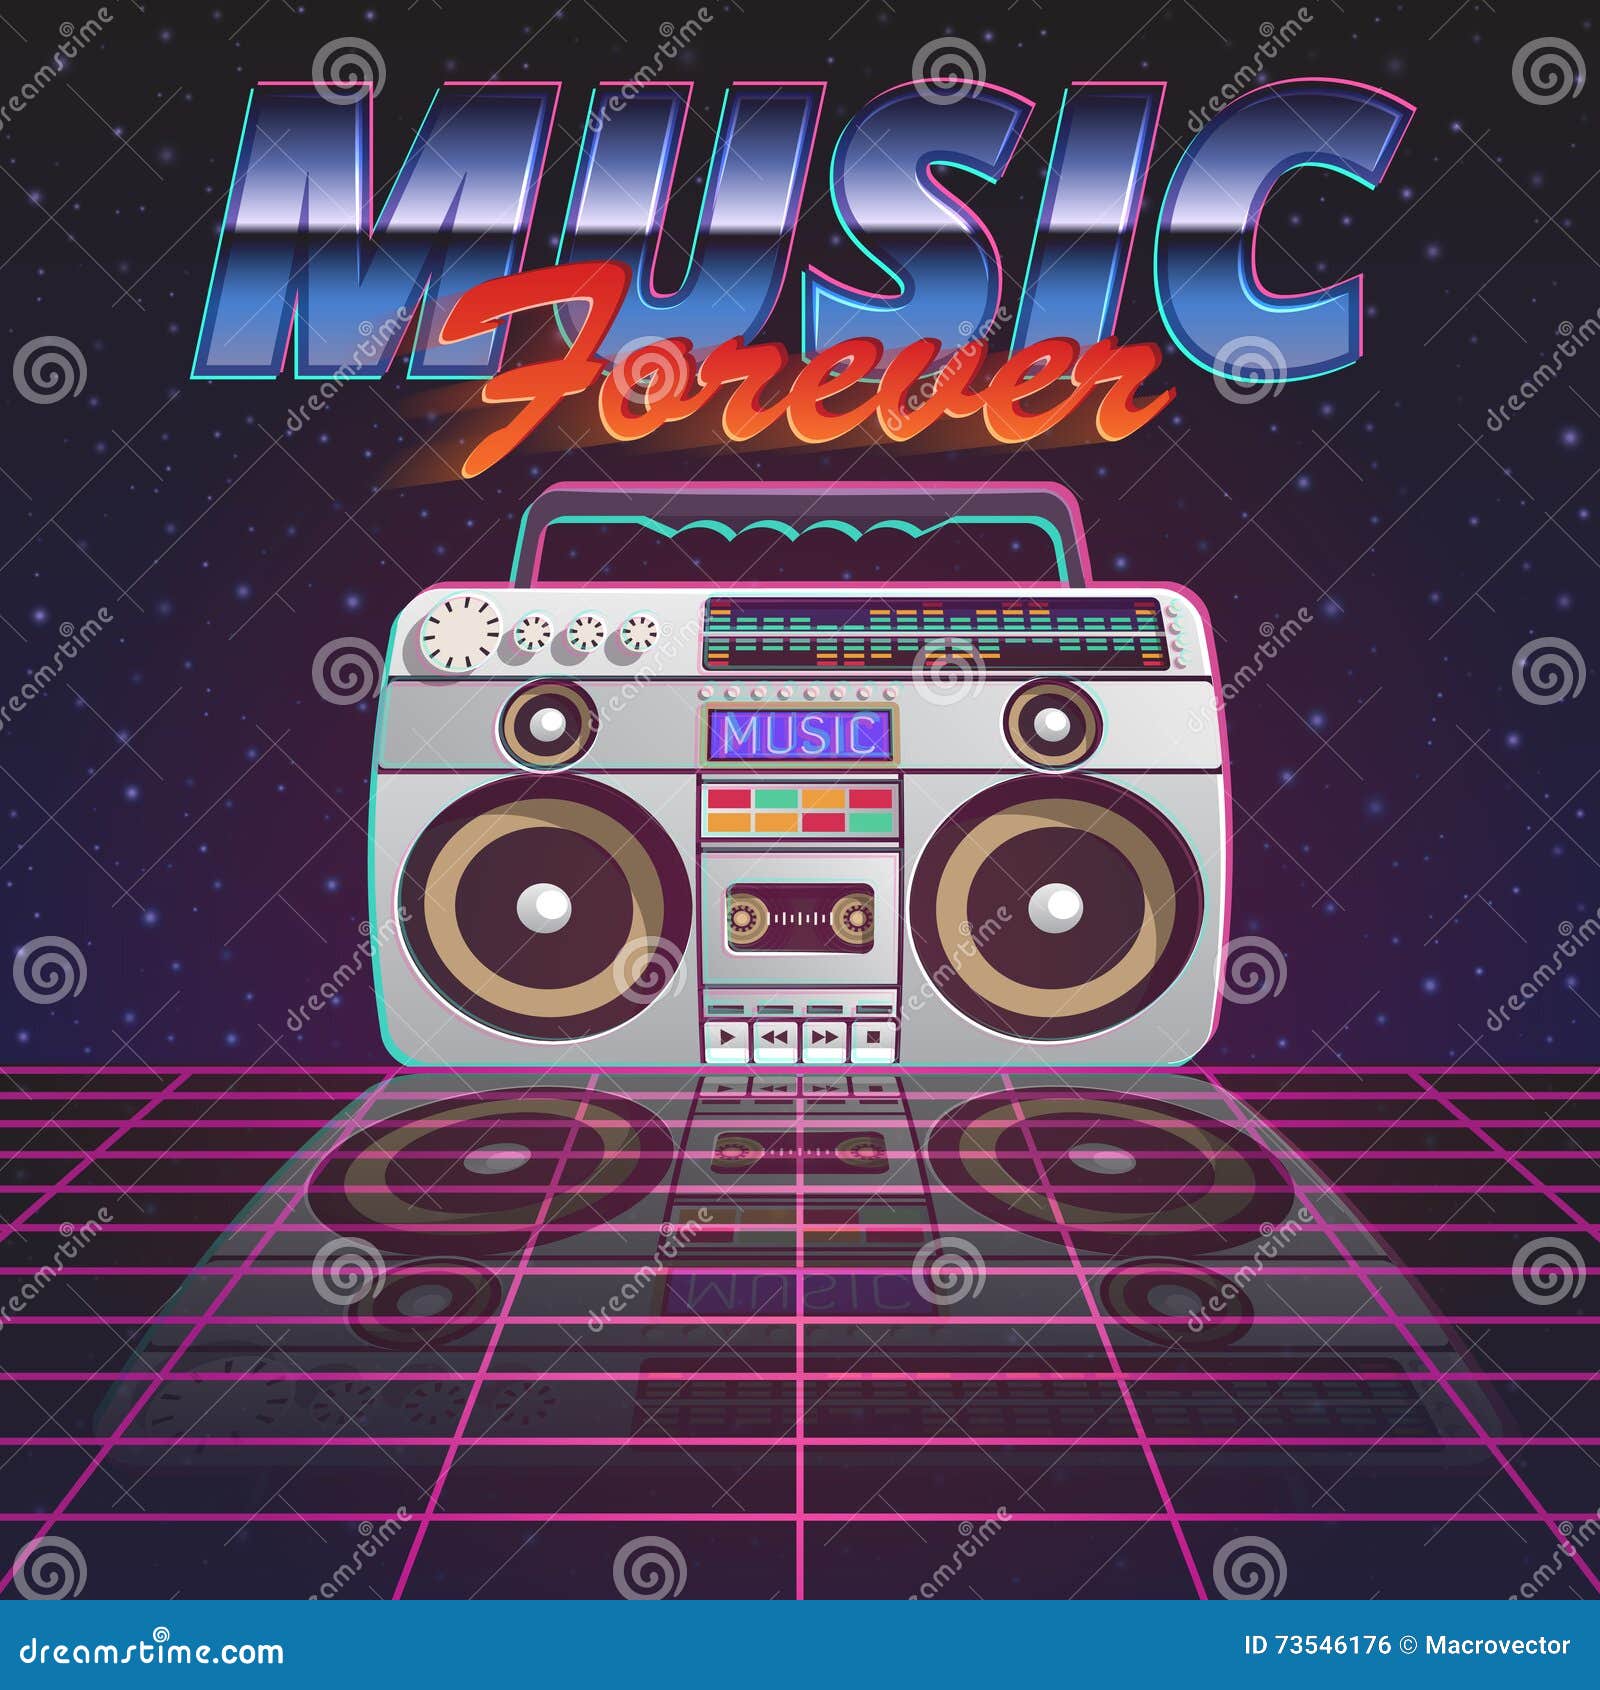 music forever poster